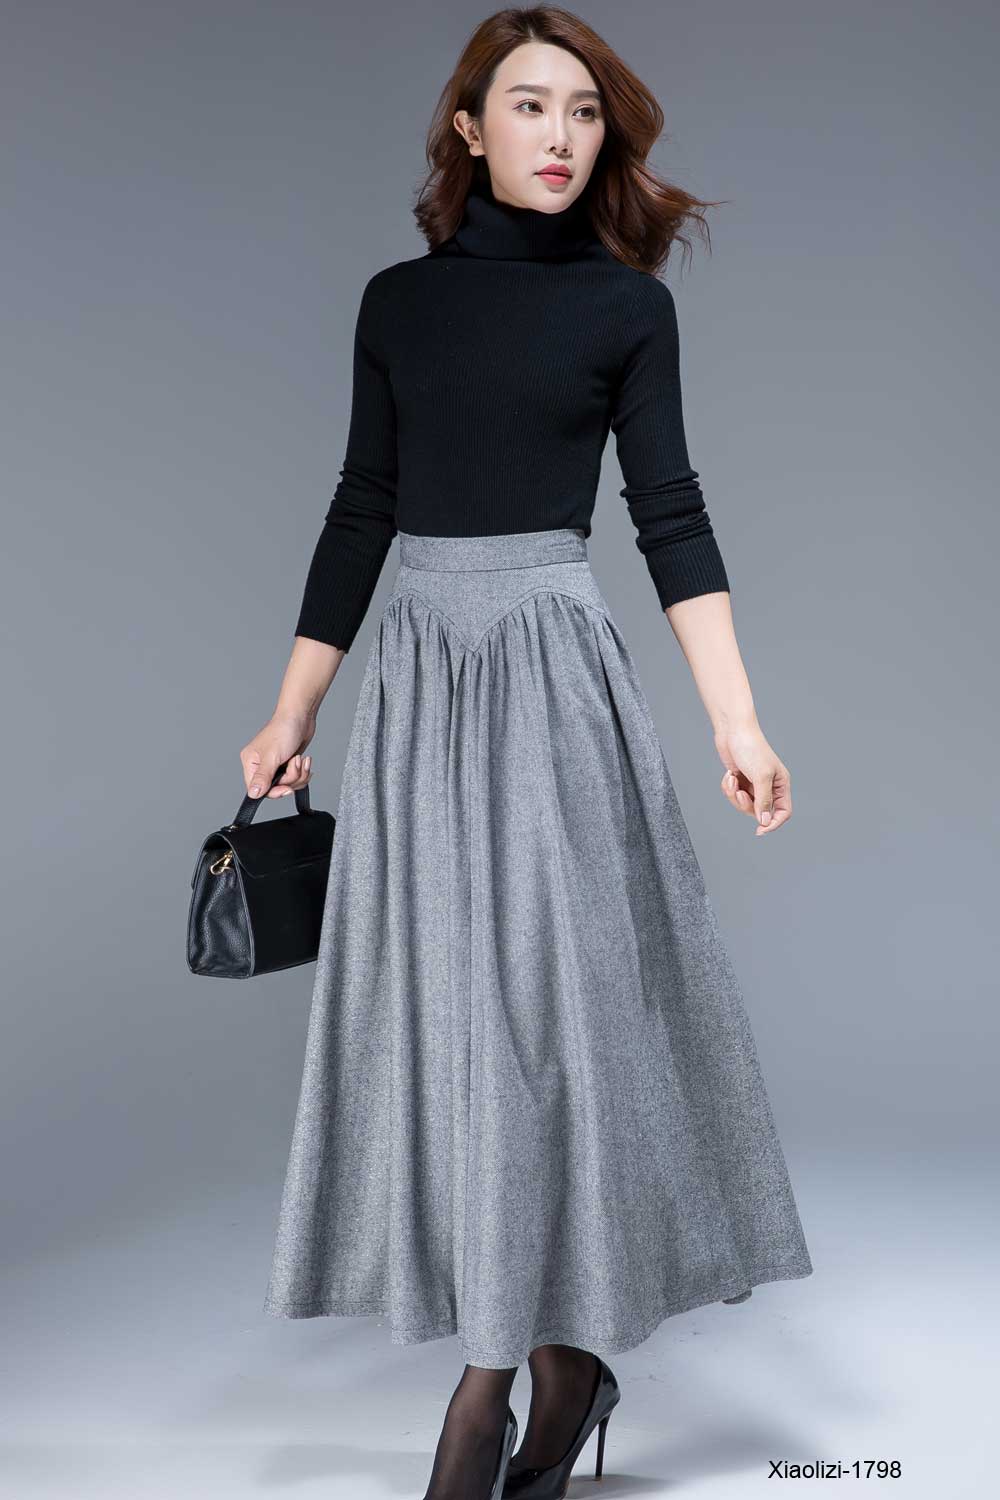 gray wool skirt for winter